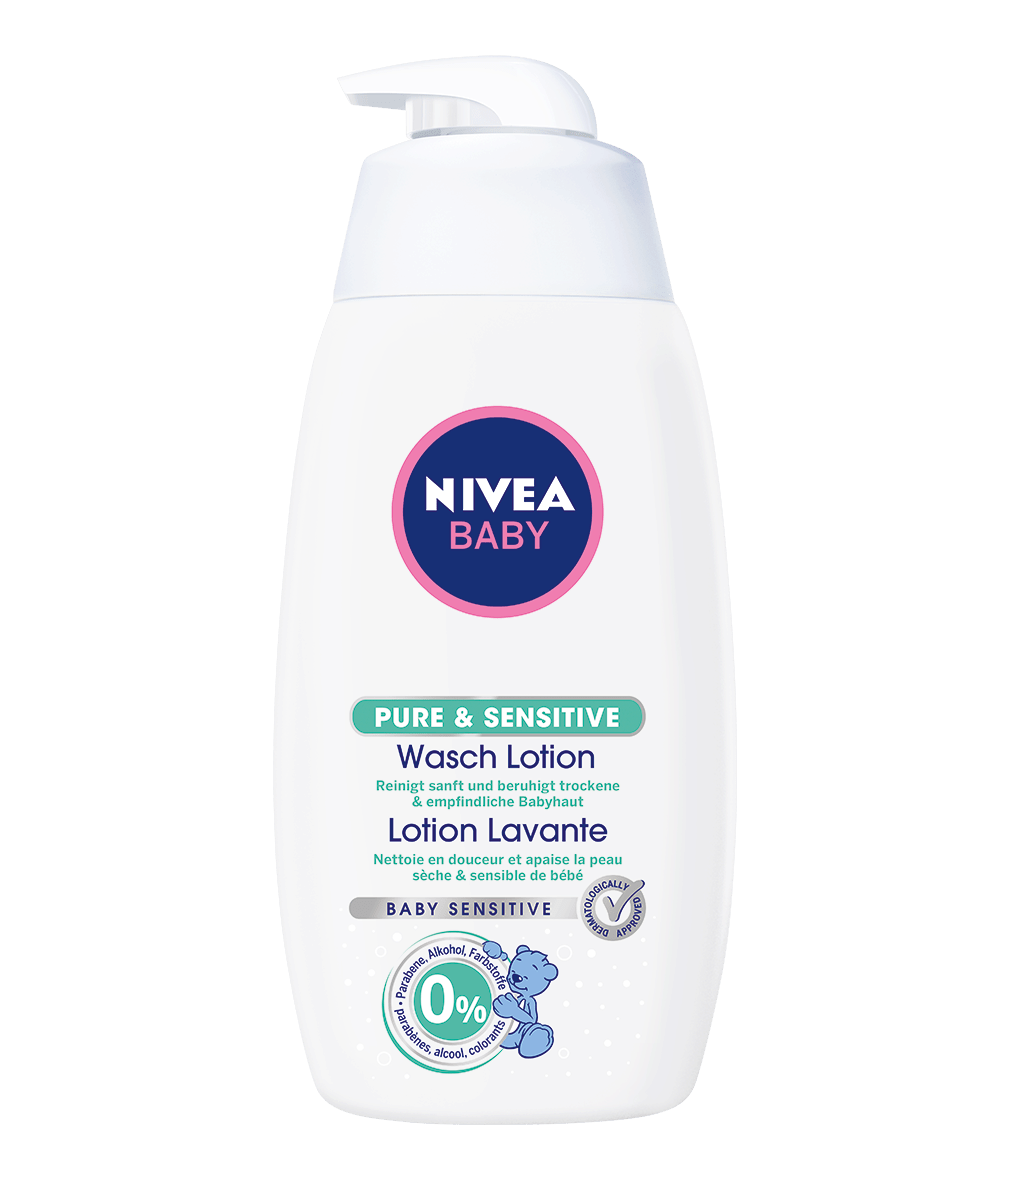 NIVEA BABY Pure & Sensitive Lotion Lavante 500ml